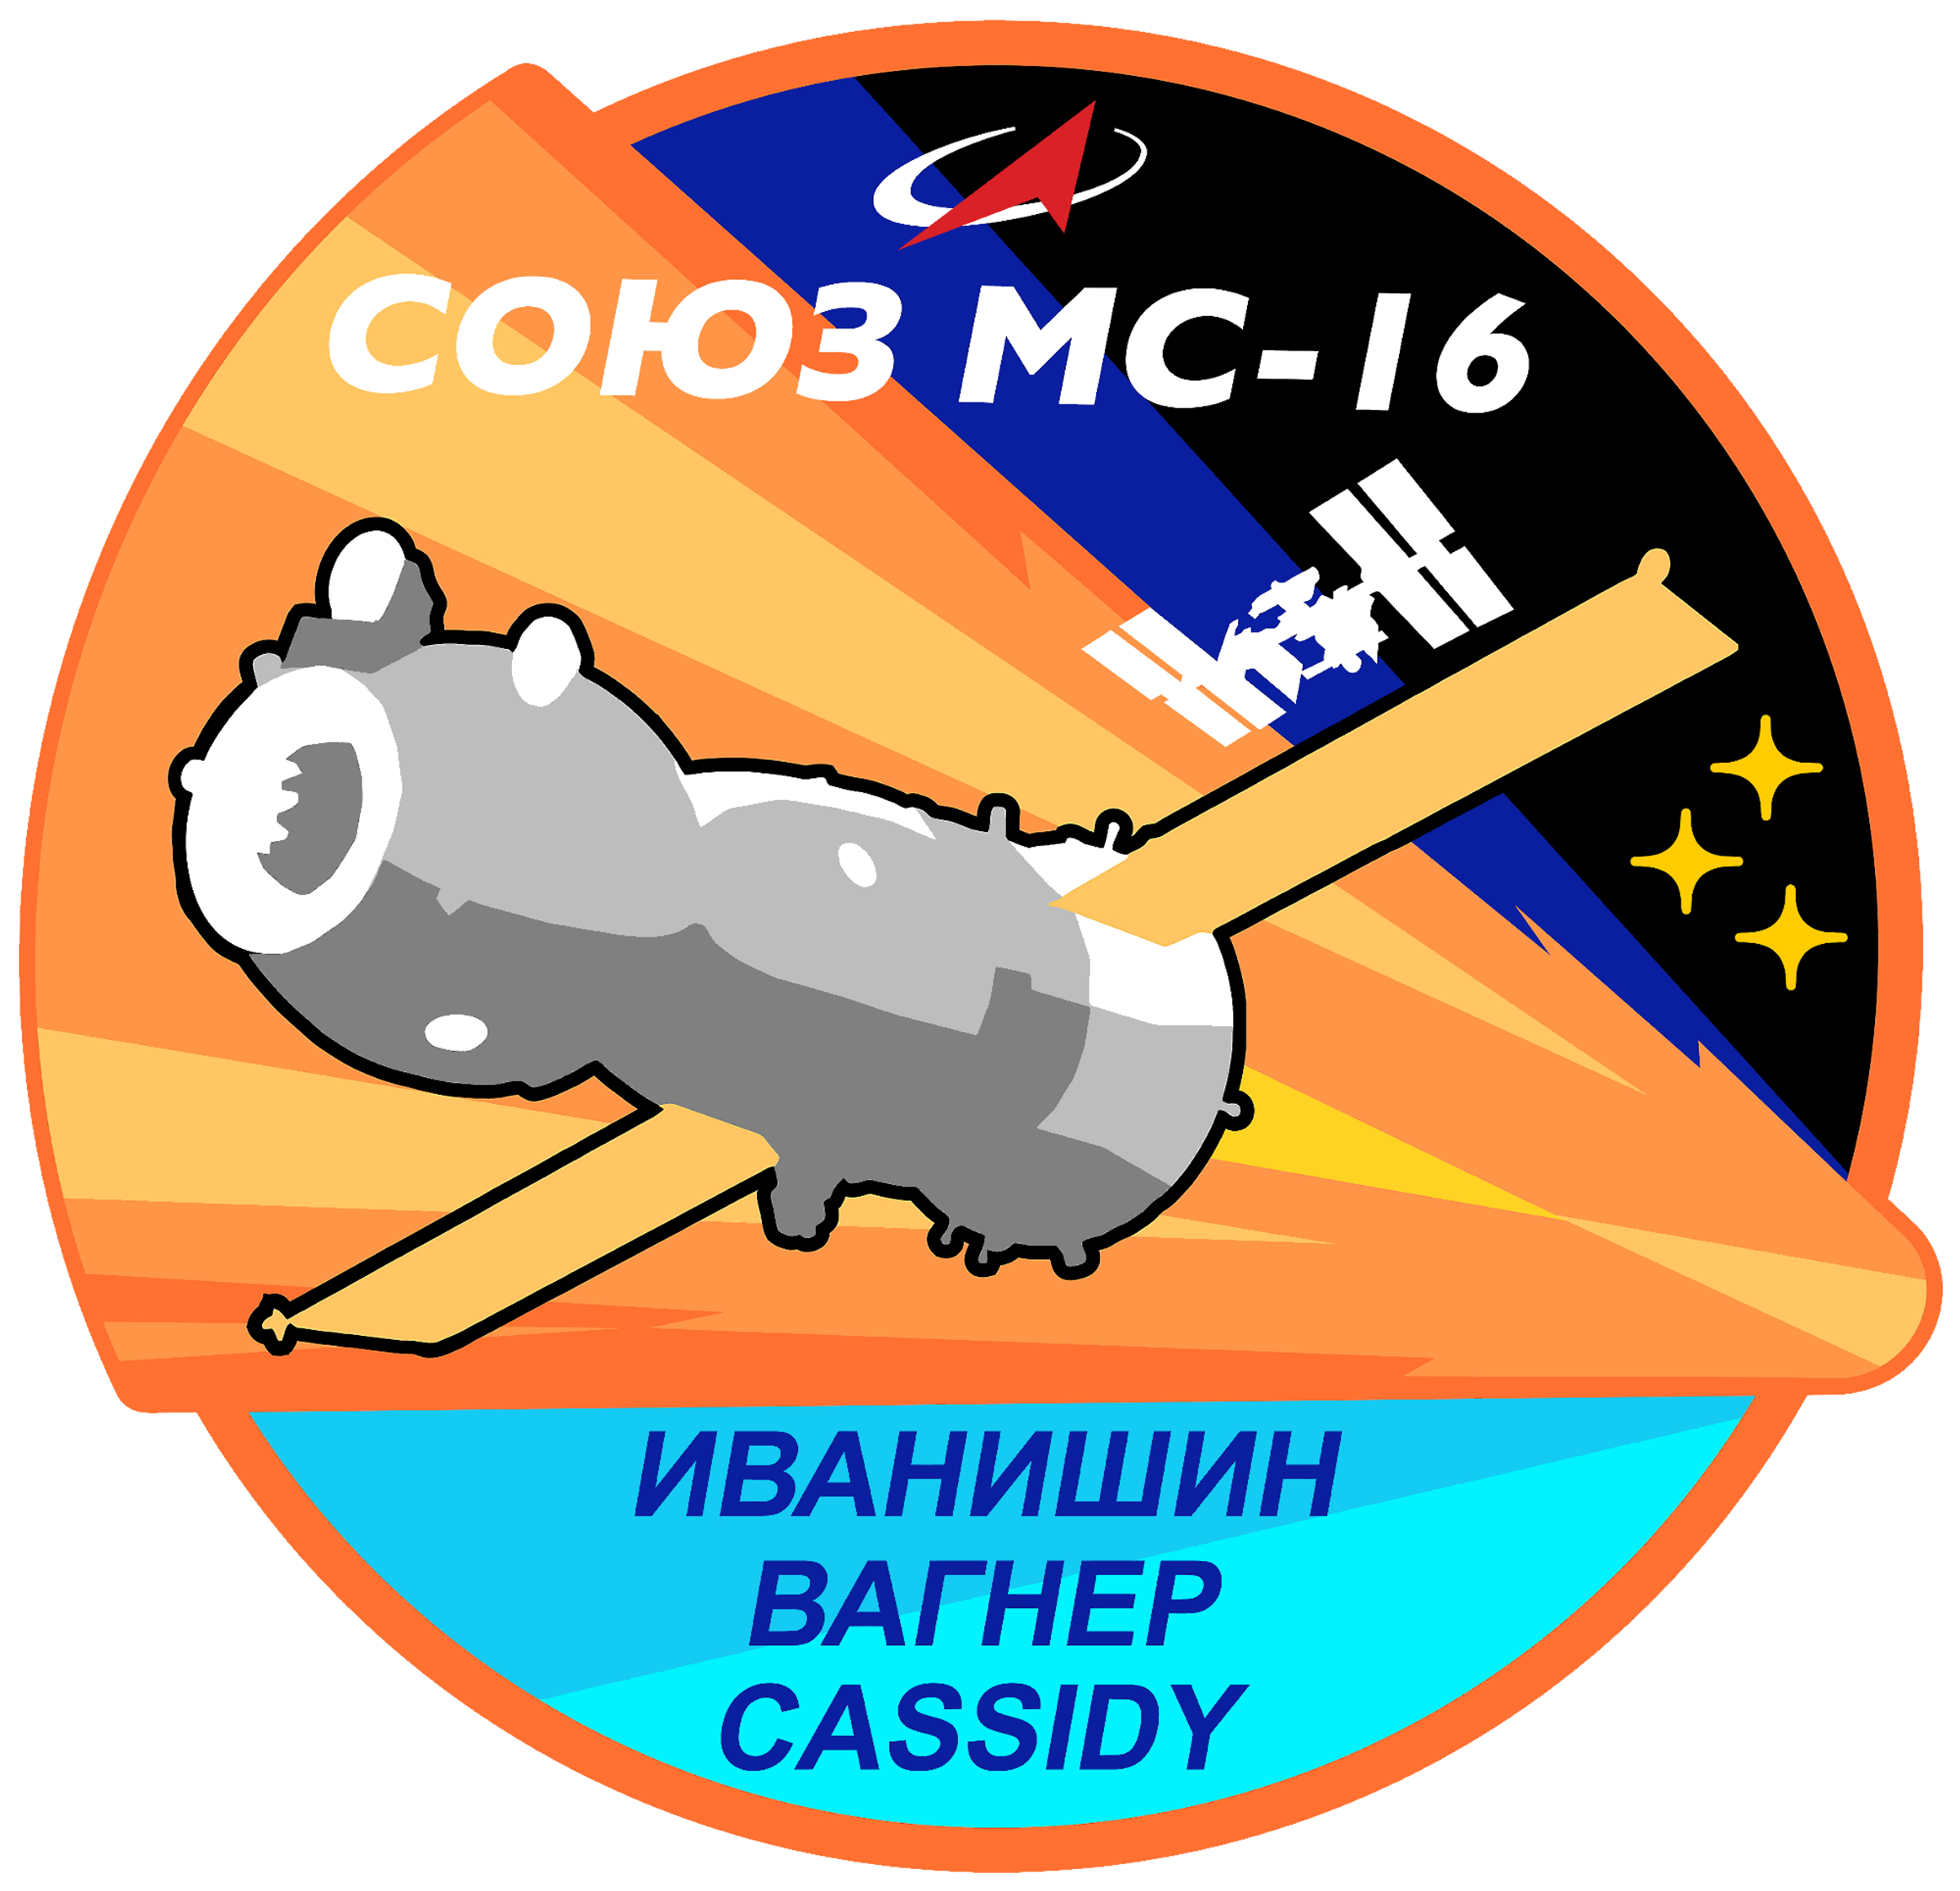 Soyuz MS-16